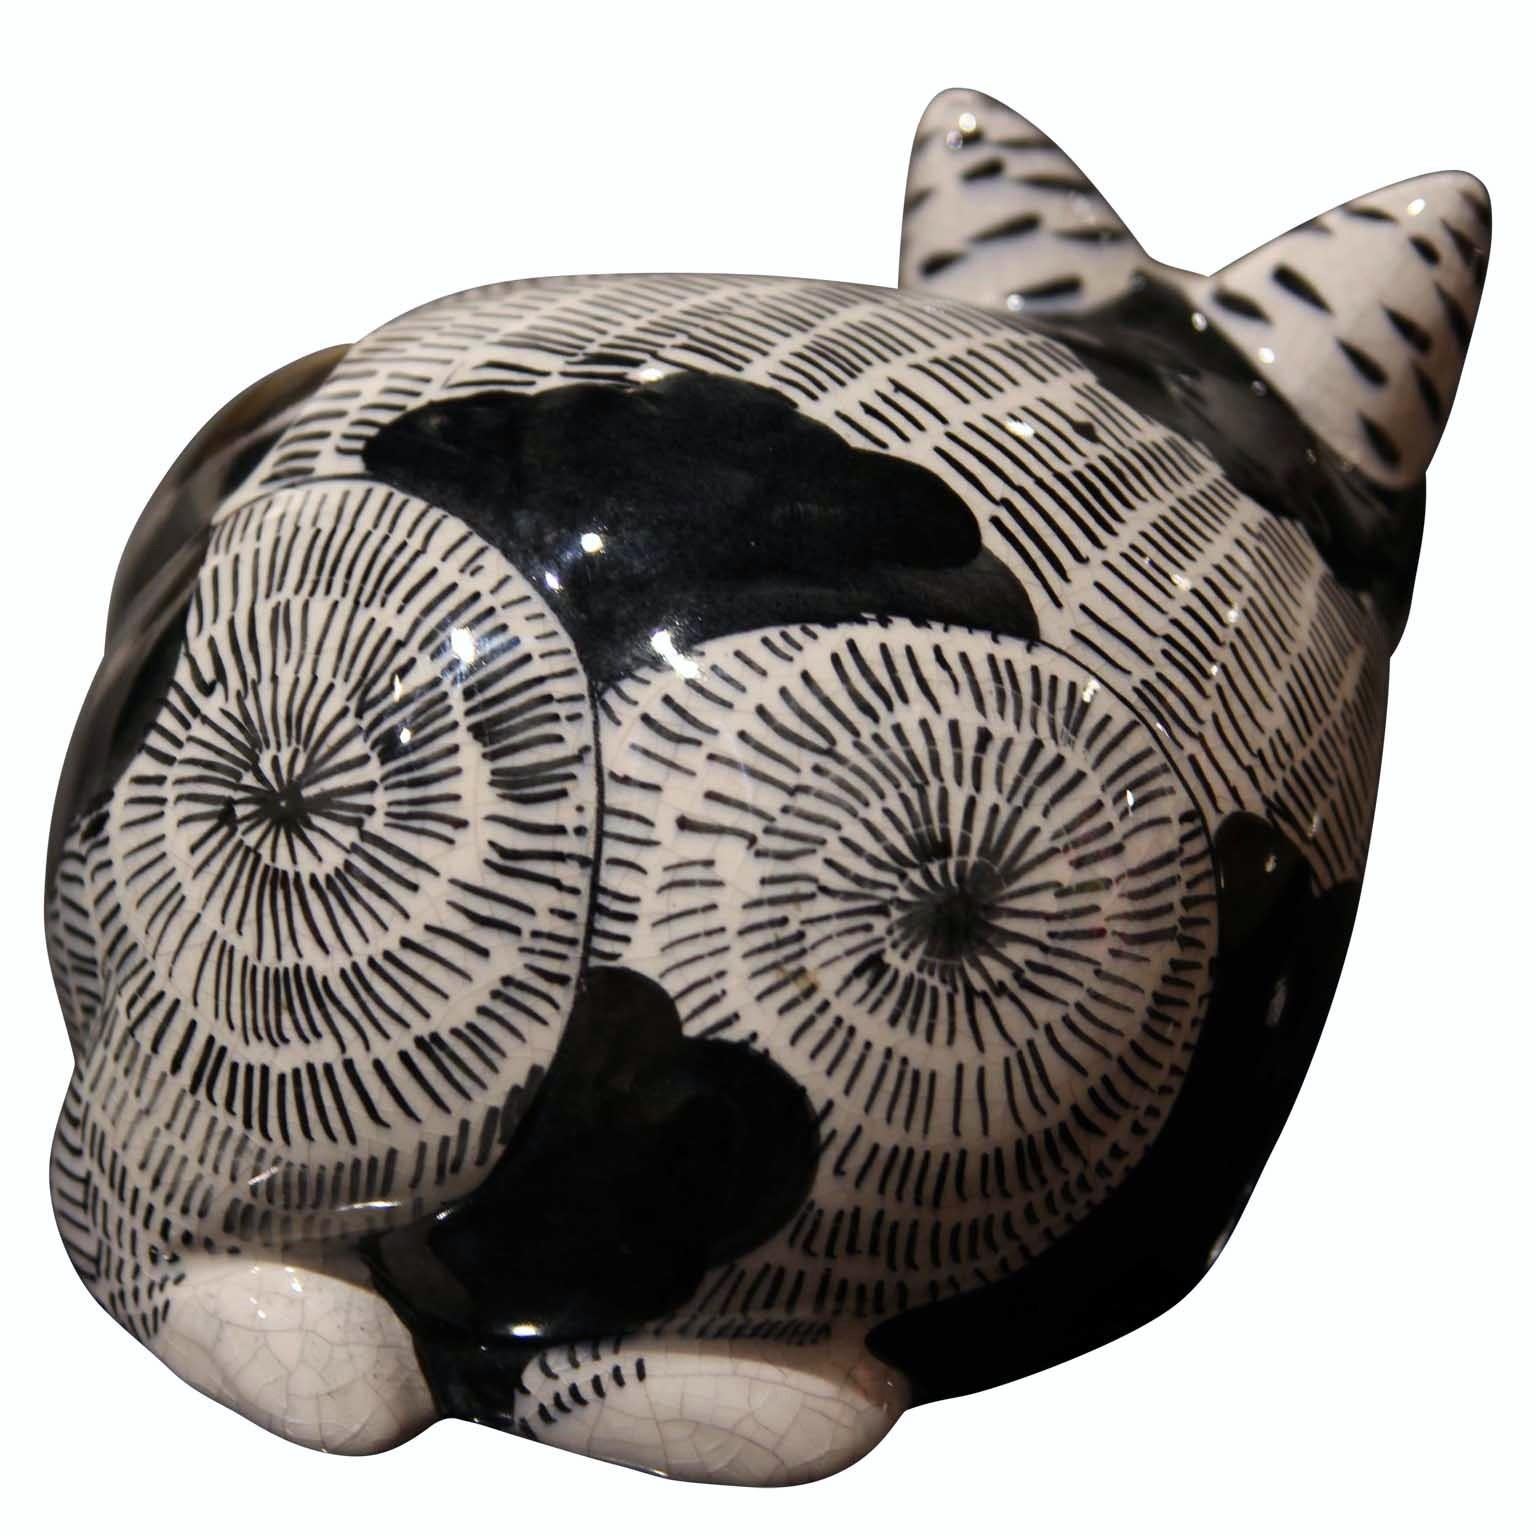 italian ceramic cat